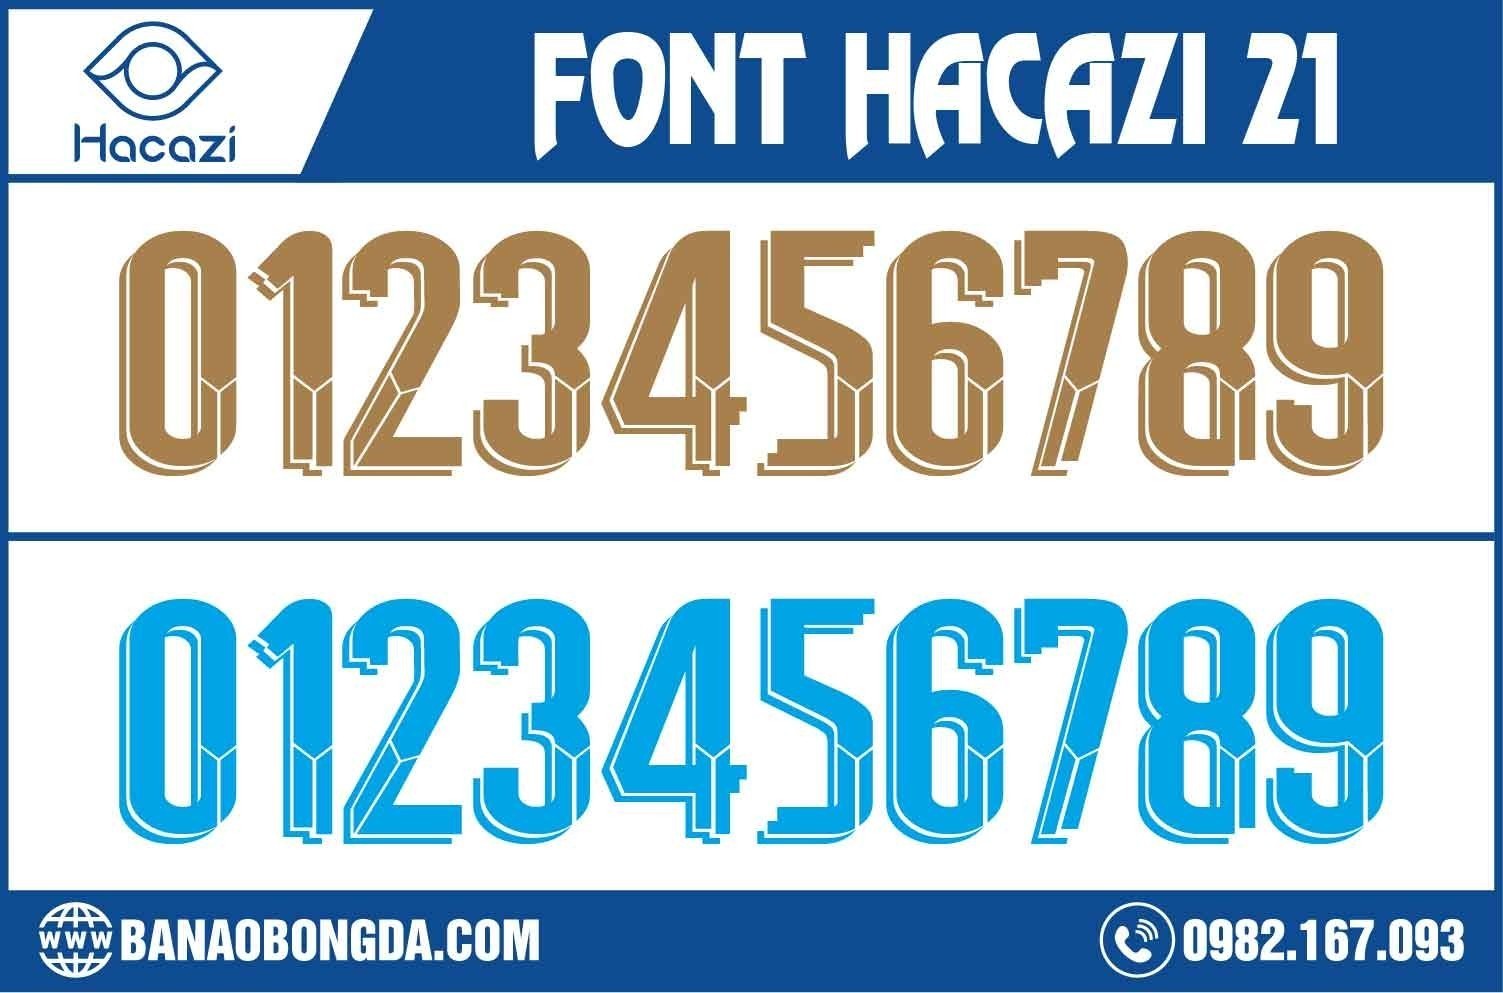  Tiếp tục là những mẫu font phong cách được cải tiến và ra mắt liên tục nằm trong bộ sưu tập mới. Font số áo bóng đá 21 là đứa con tinh thần được Shop Hacazi Sport chúng tôi nâng niu và lựa chọn giới thiệu đến mọi người. 